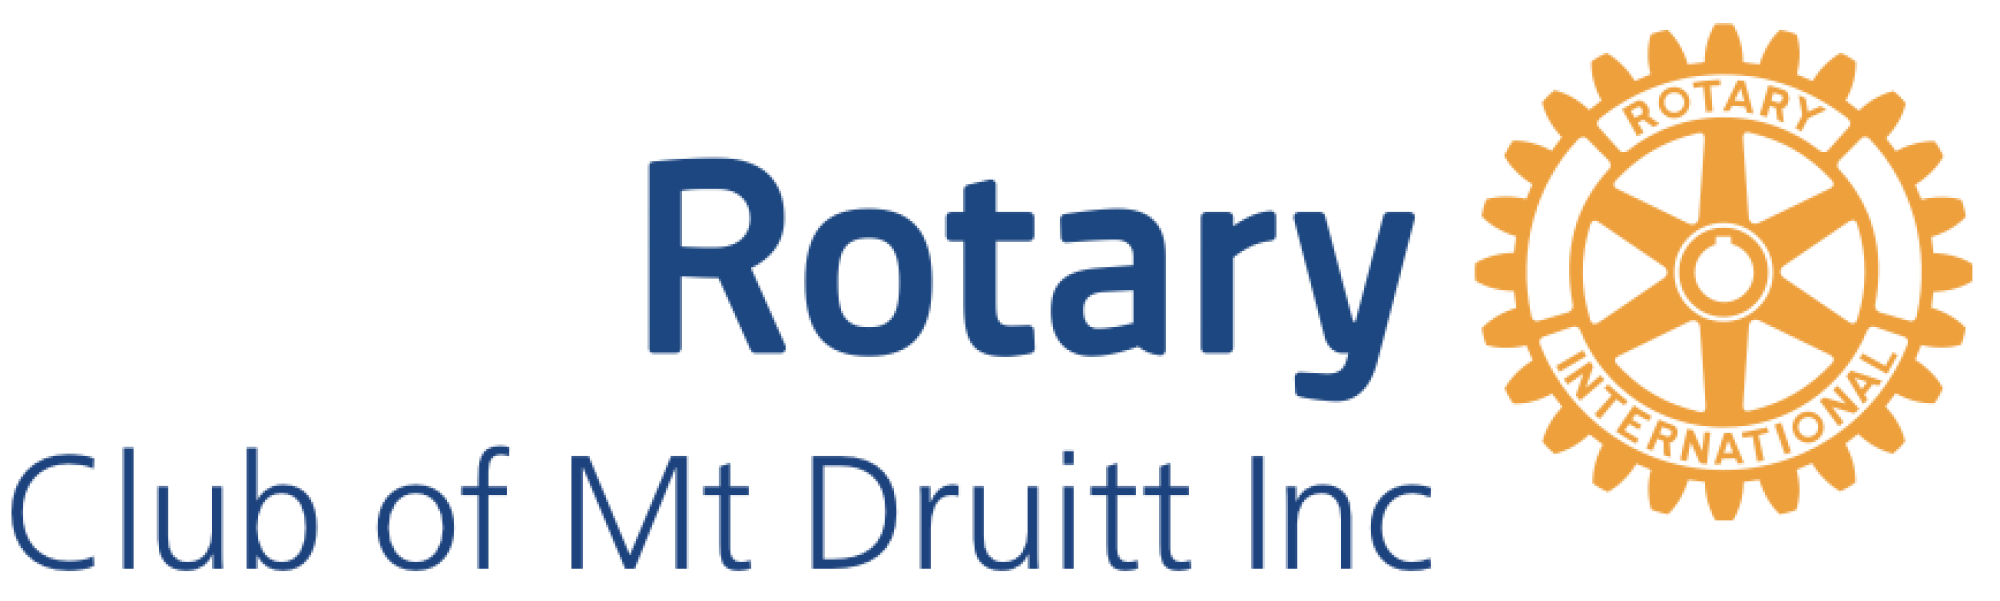 Mt Druitt logo